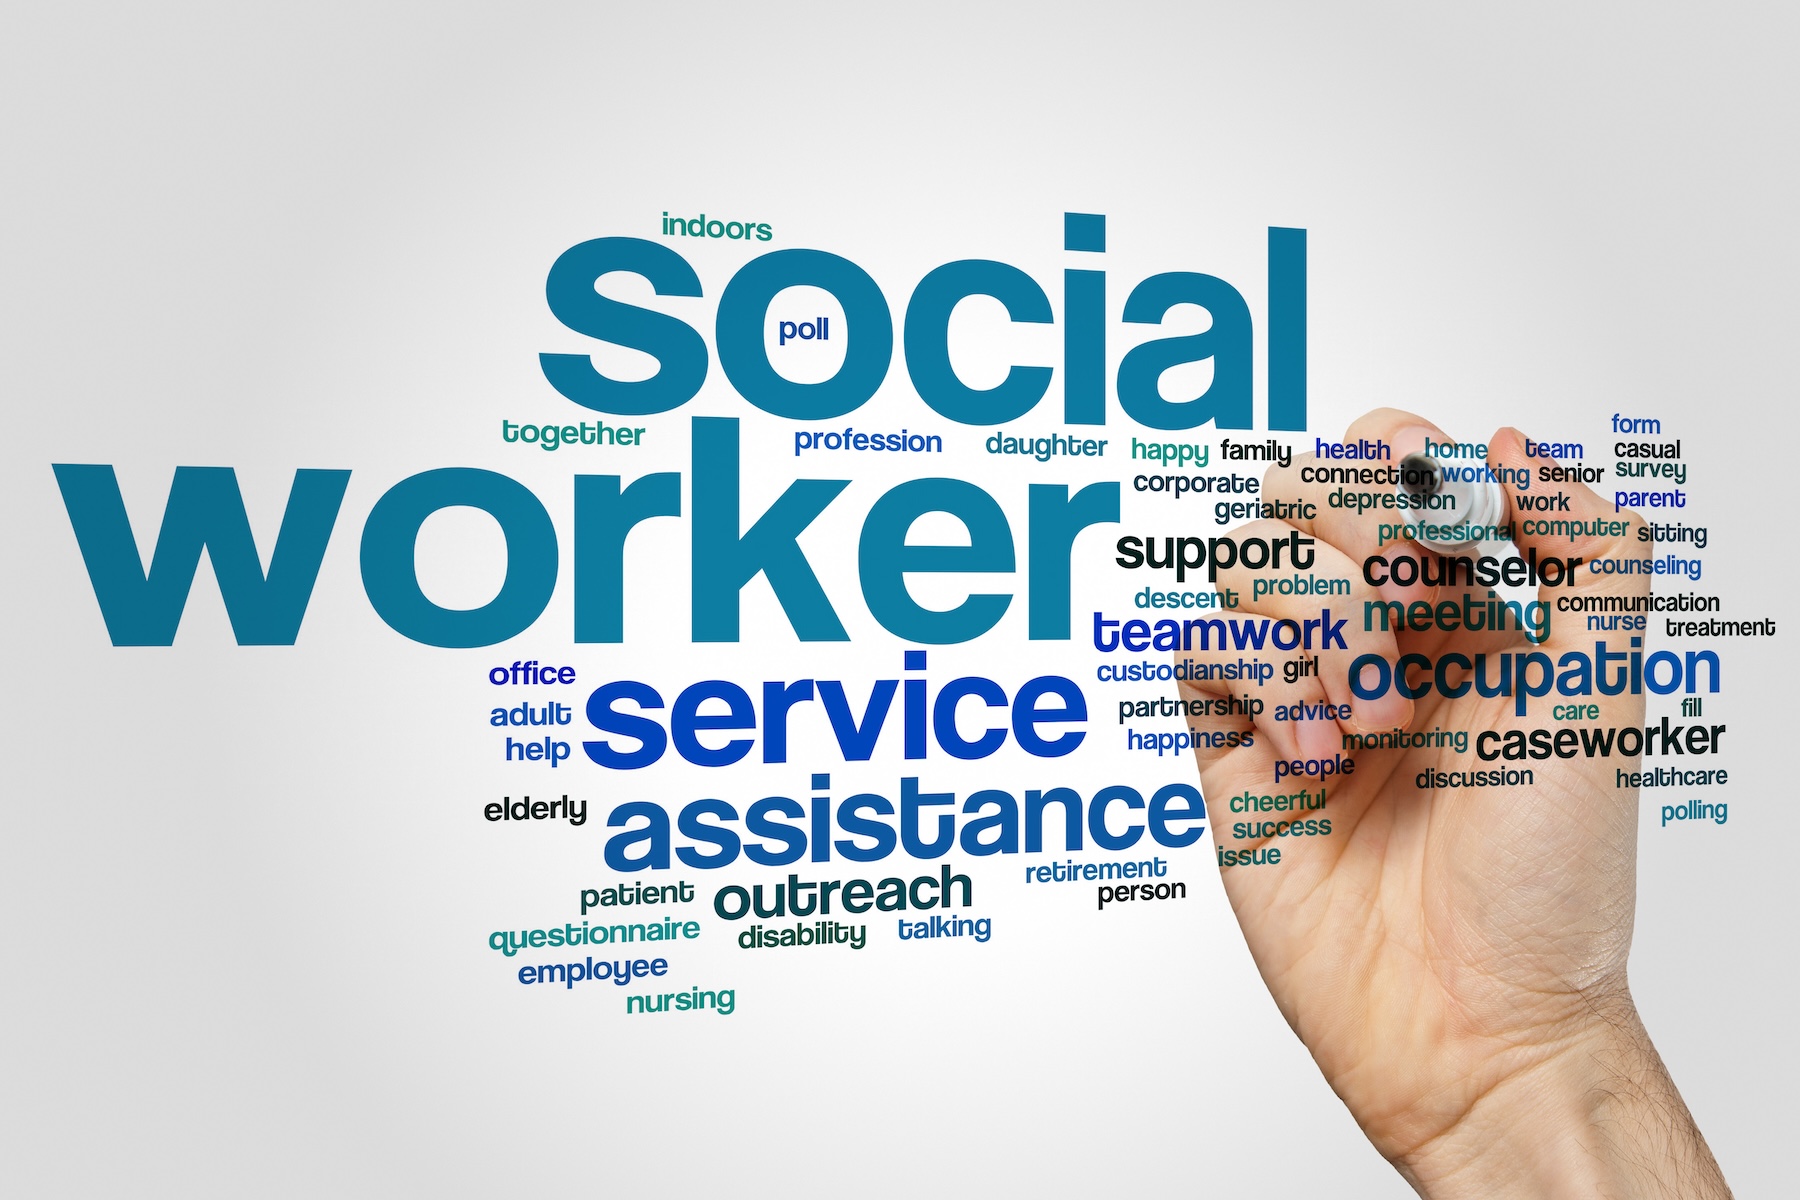 word cloud of social work terms